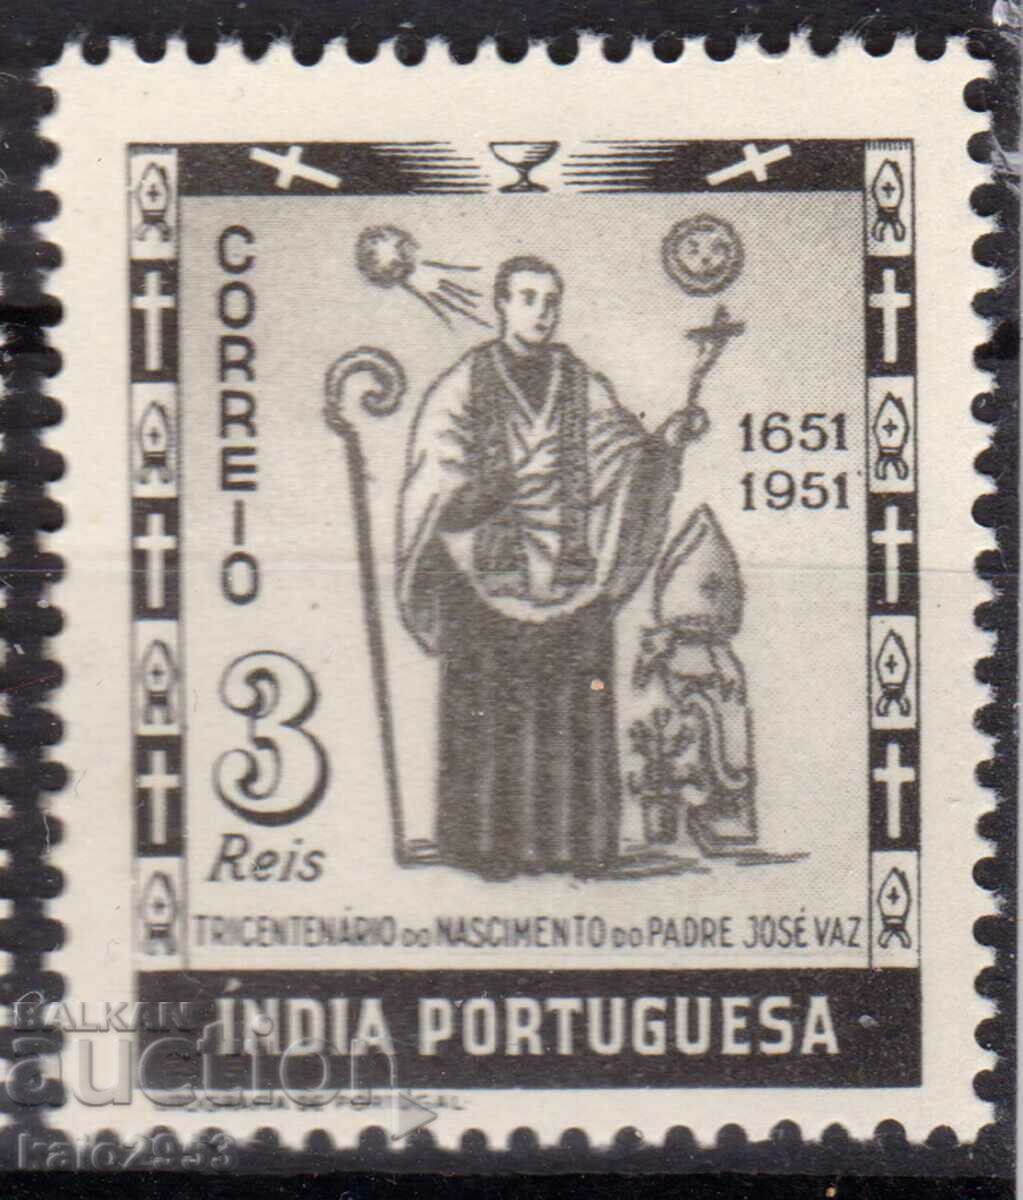 Πορτογαλική Ινδία-1951-300 μ.Χ του μοναχού Jose Vaz-MLH